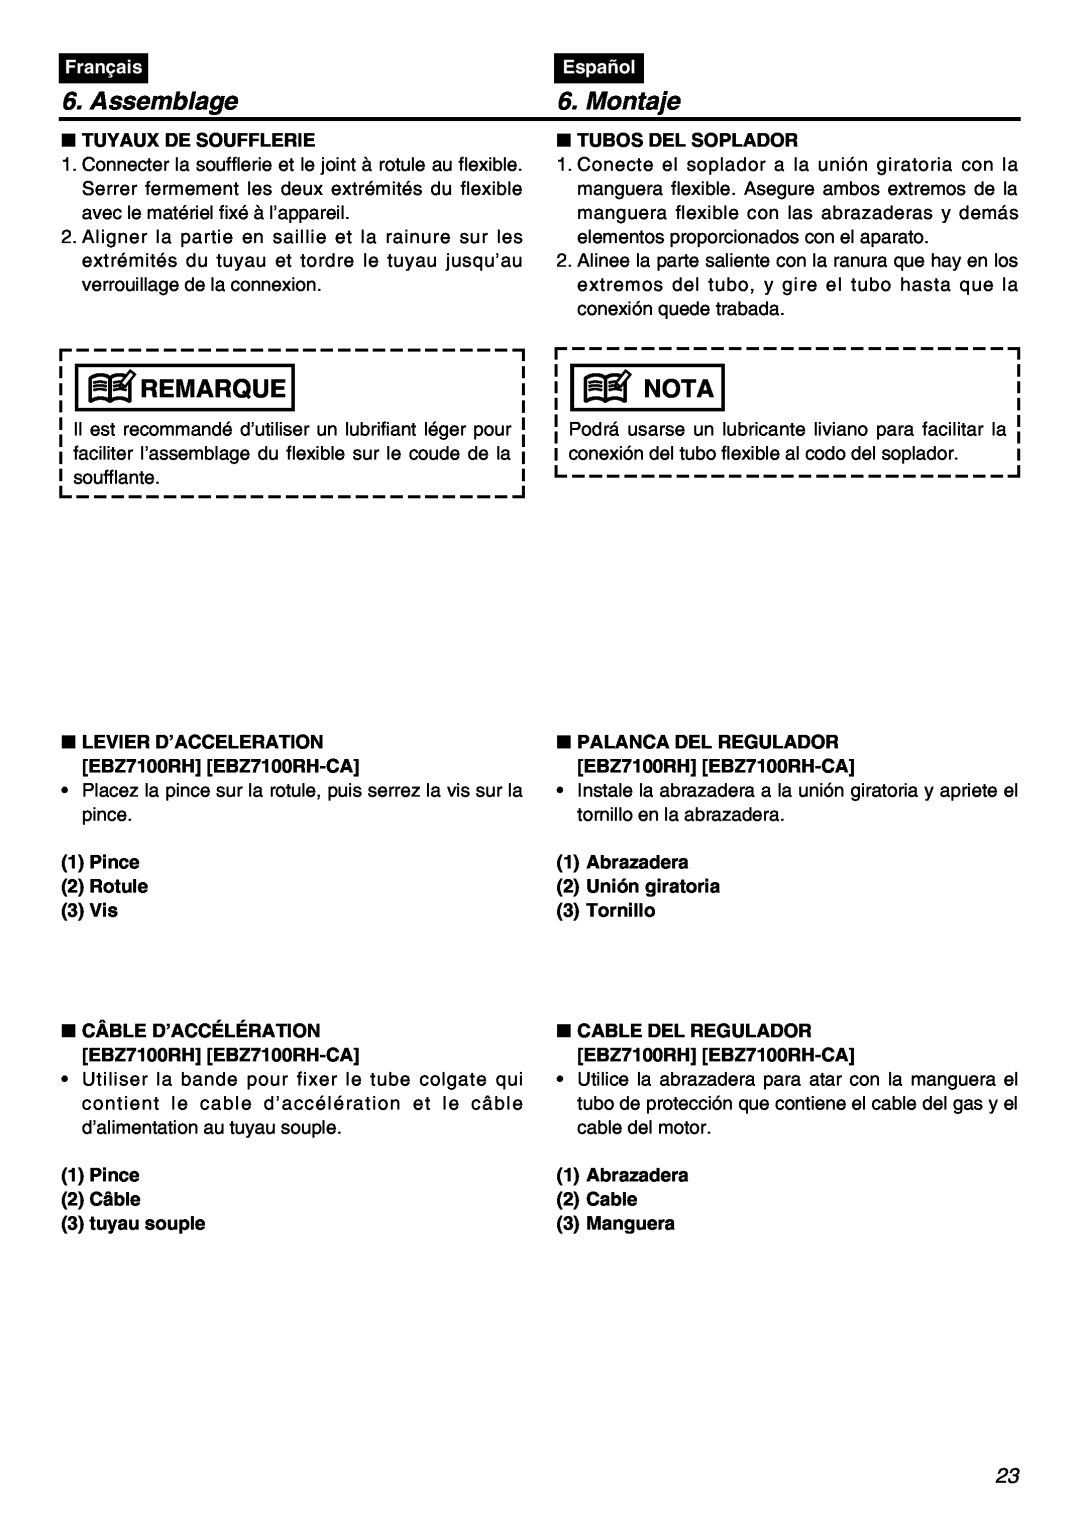 RedMax EBZ7100RH manual Assemblage, Montaje, Remarque, Nota, Français, Español, Tuyaux De Soufflerie, Tubos Del Soplador 